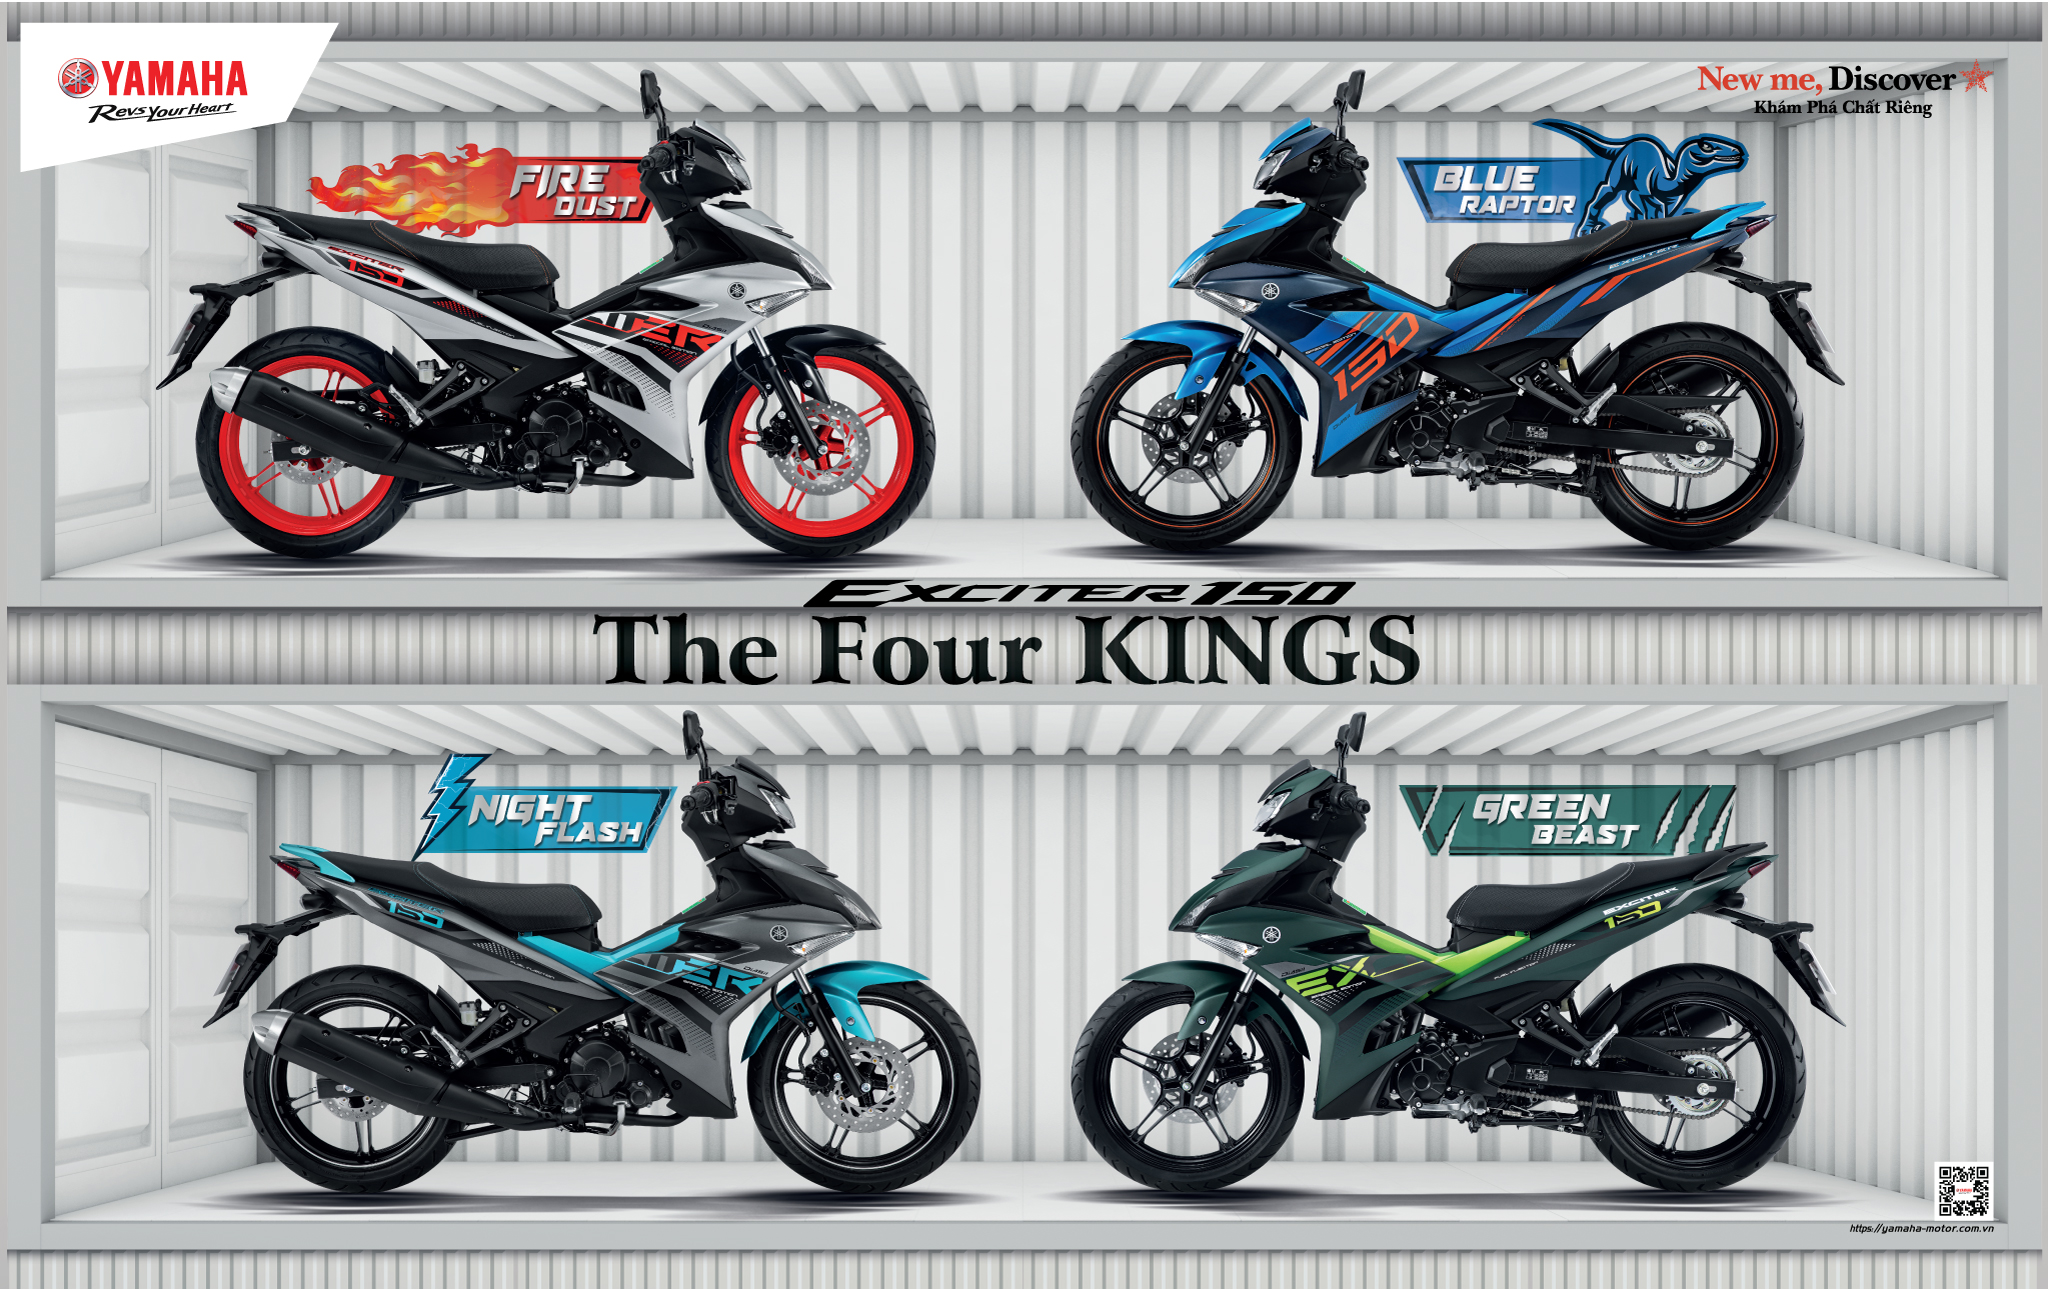 Exciter màu mới 2021 - "THE FOUR KINGS" - Yamaha Sài Gòn